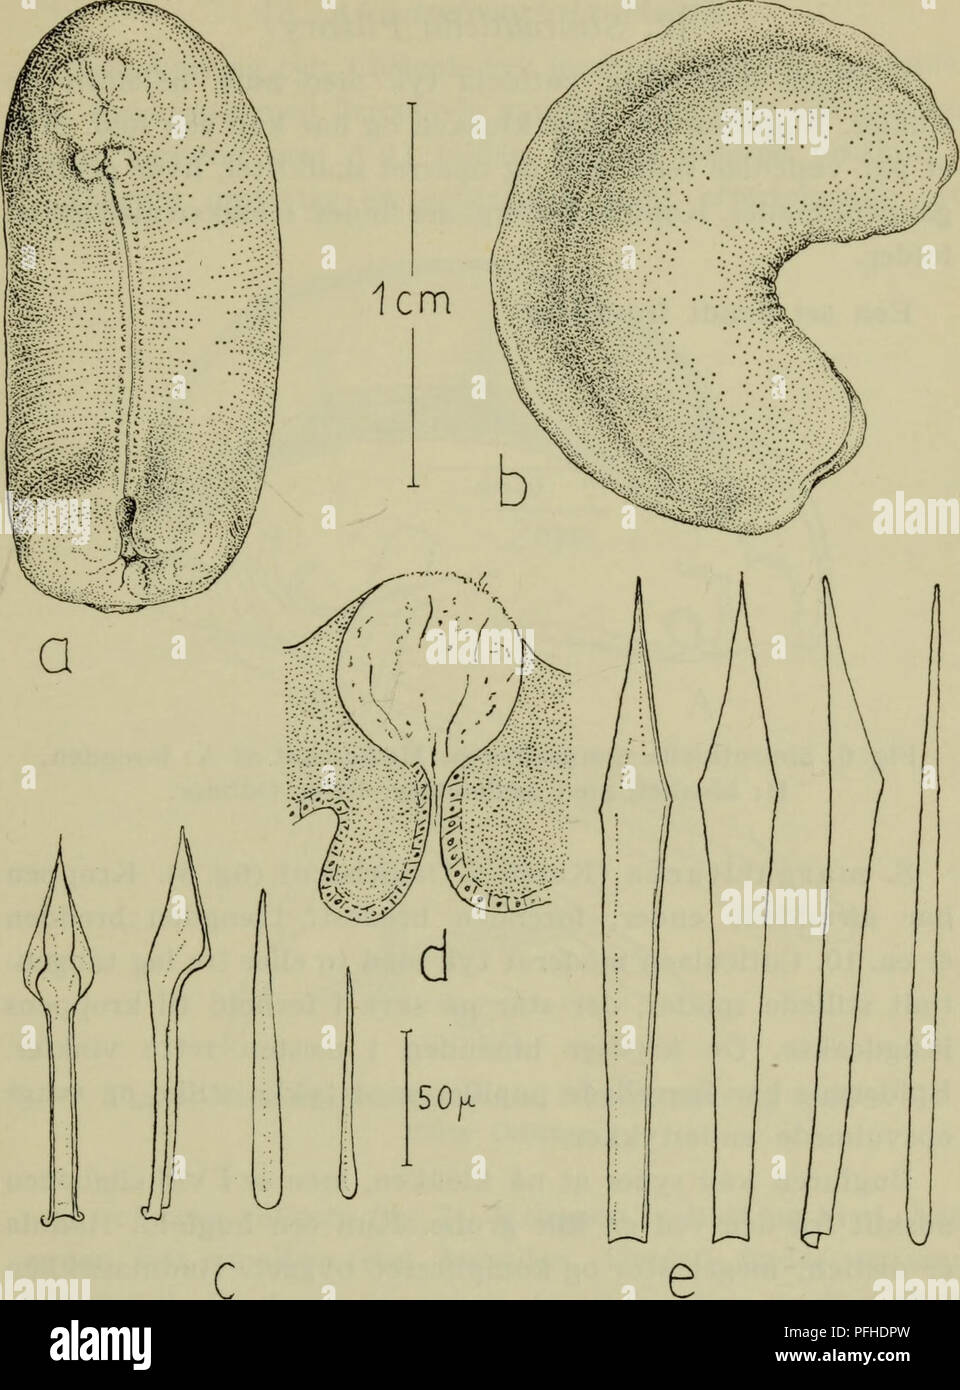 Danmarks fauna; illustrerede haandbøger más Den Danske dyreverden... 17.  Fig. 5. Neomenia carinata. Un bugside, b fra siden dorsale spikler, c, d, e  N. dalyelli hudpapil, dorsale spikler. a-c orig. d,